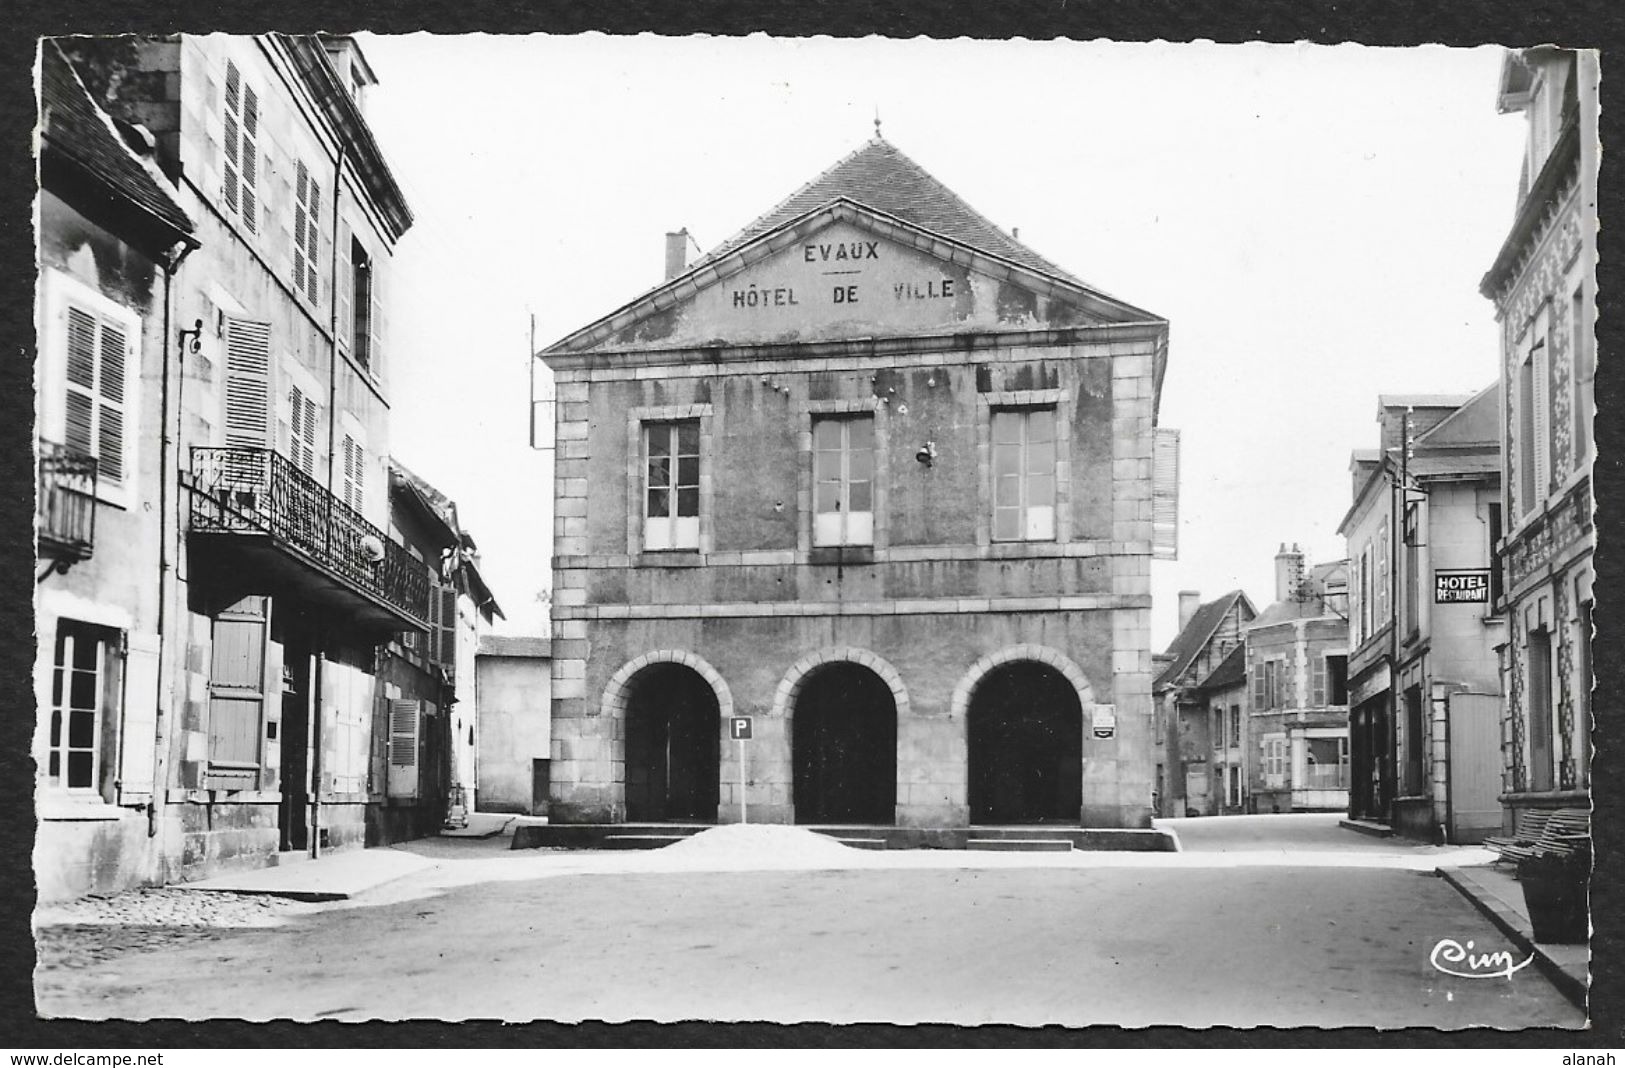 EVAUX Les BAINS L'Hôtel De Ville (Combier) Creuse (23) - Evaux Les Bains